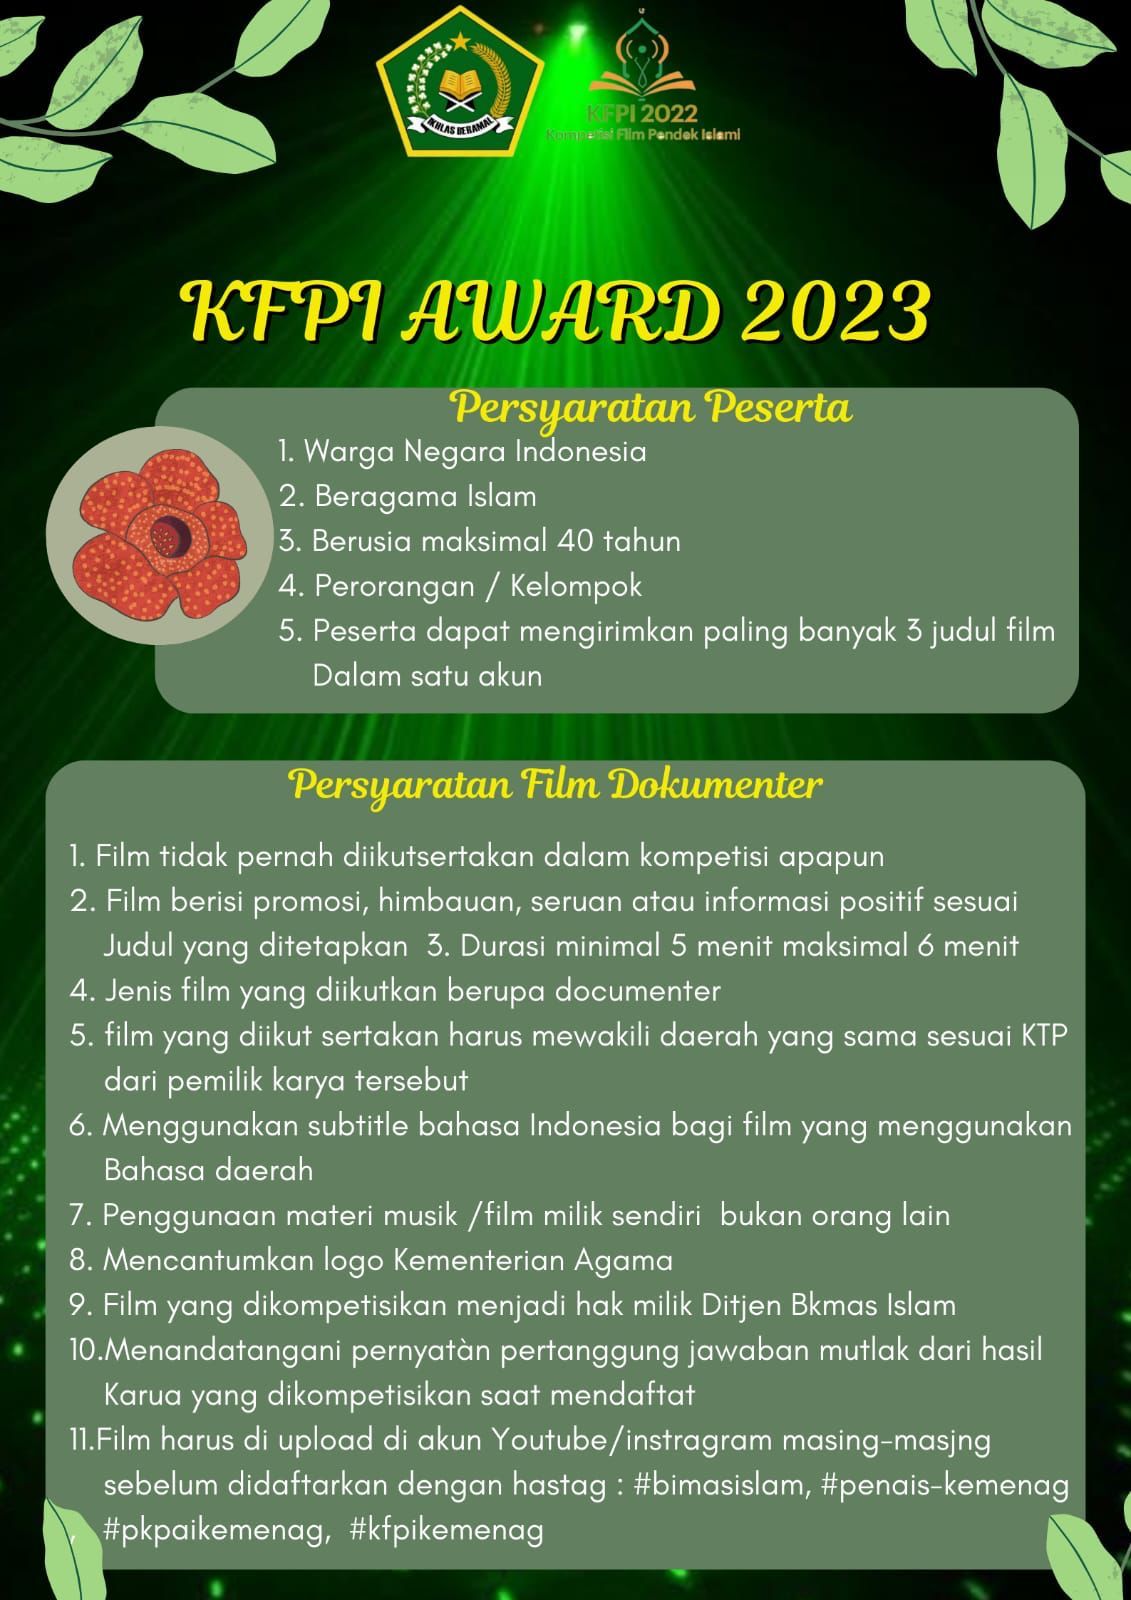 Siap-Siap! Penilaian KFPI TK Provinsi Bengkulu Menanti, Siapakah yang Akan Menjadi Juara?